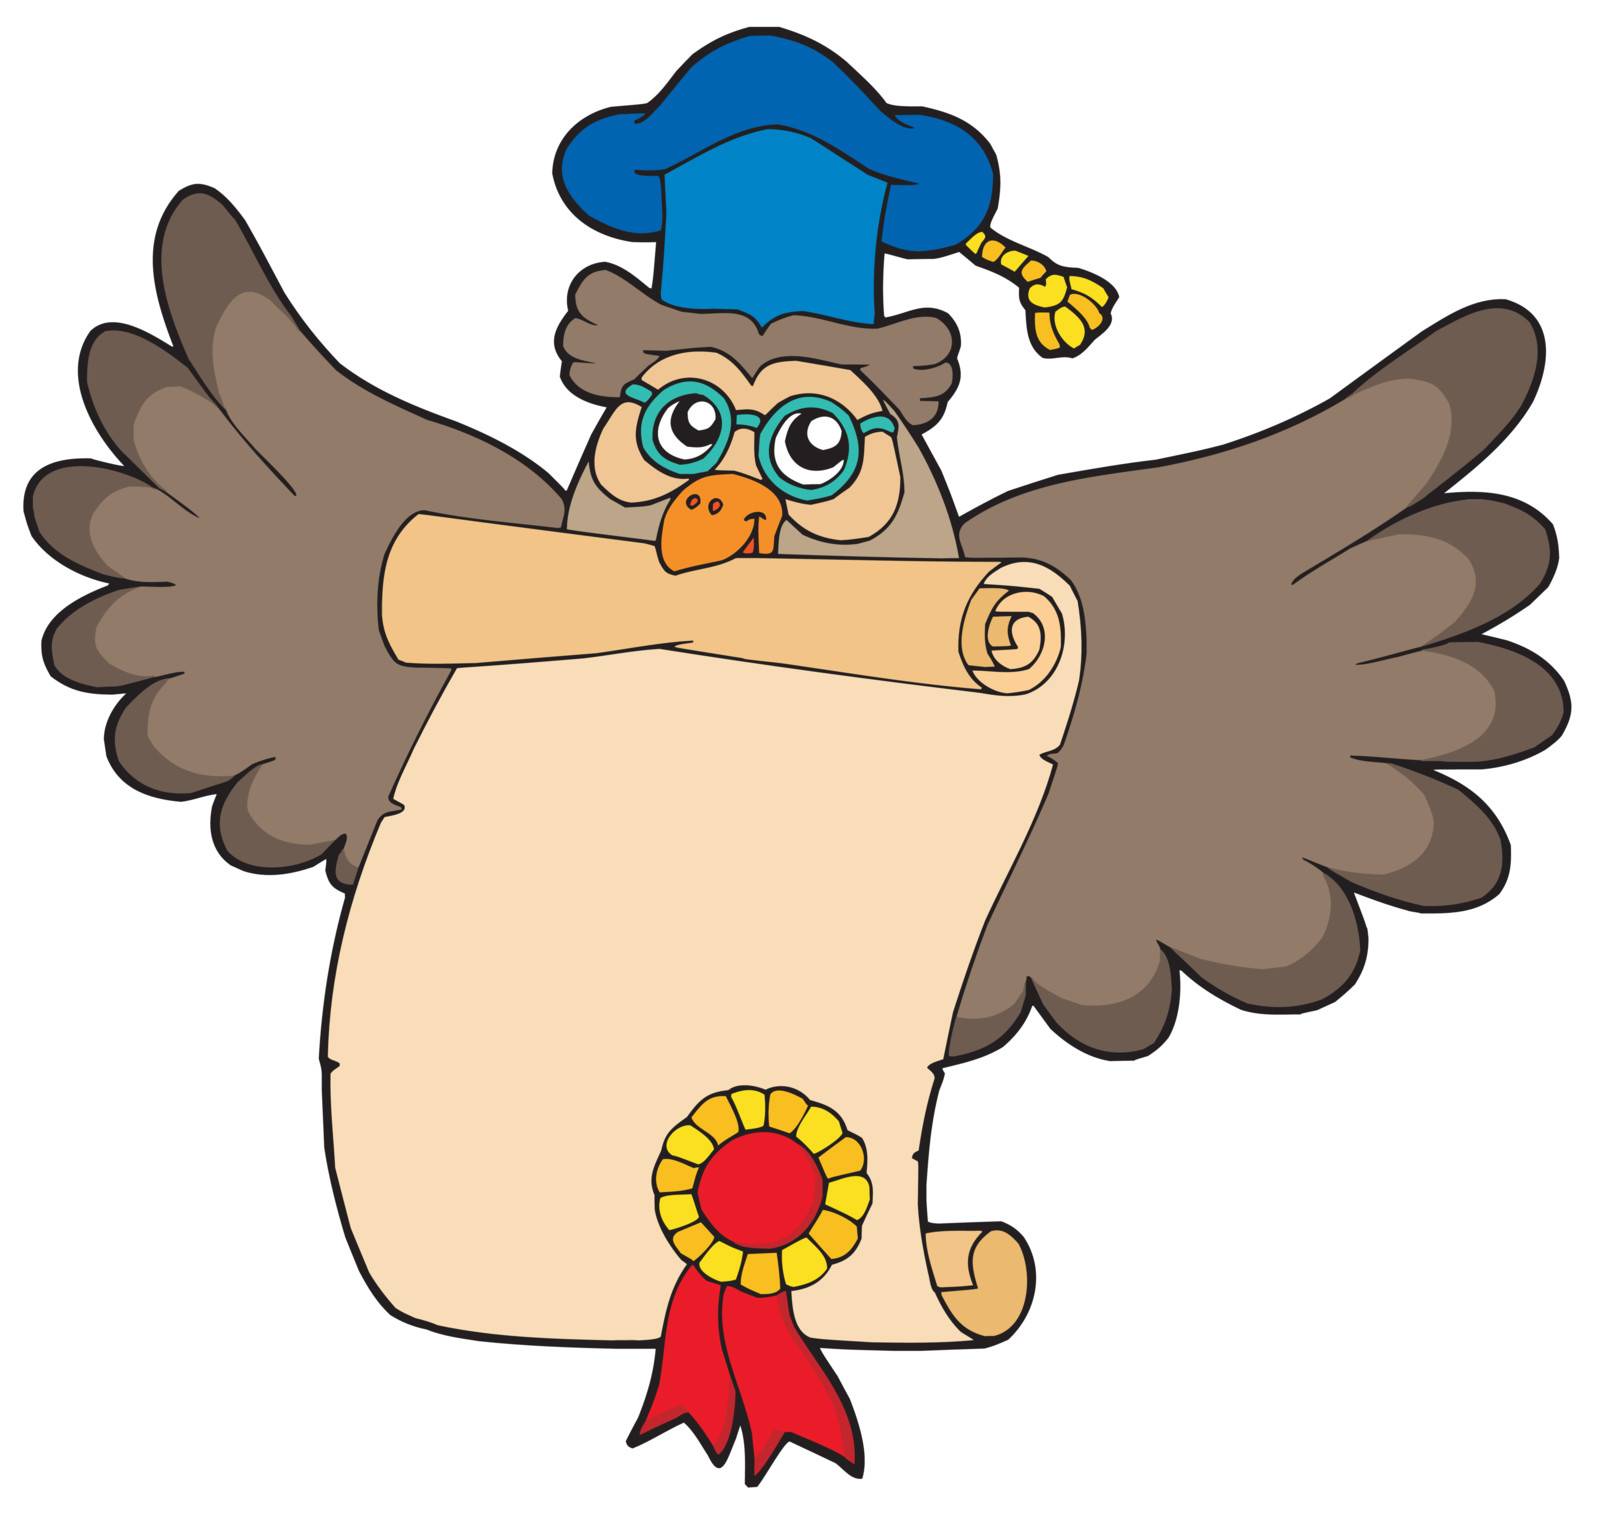 Owl teacher with diploma - vector illustration.